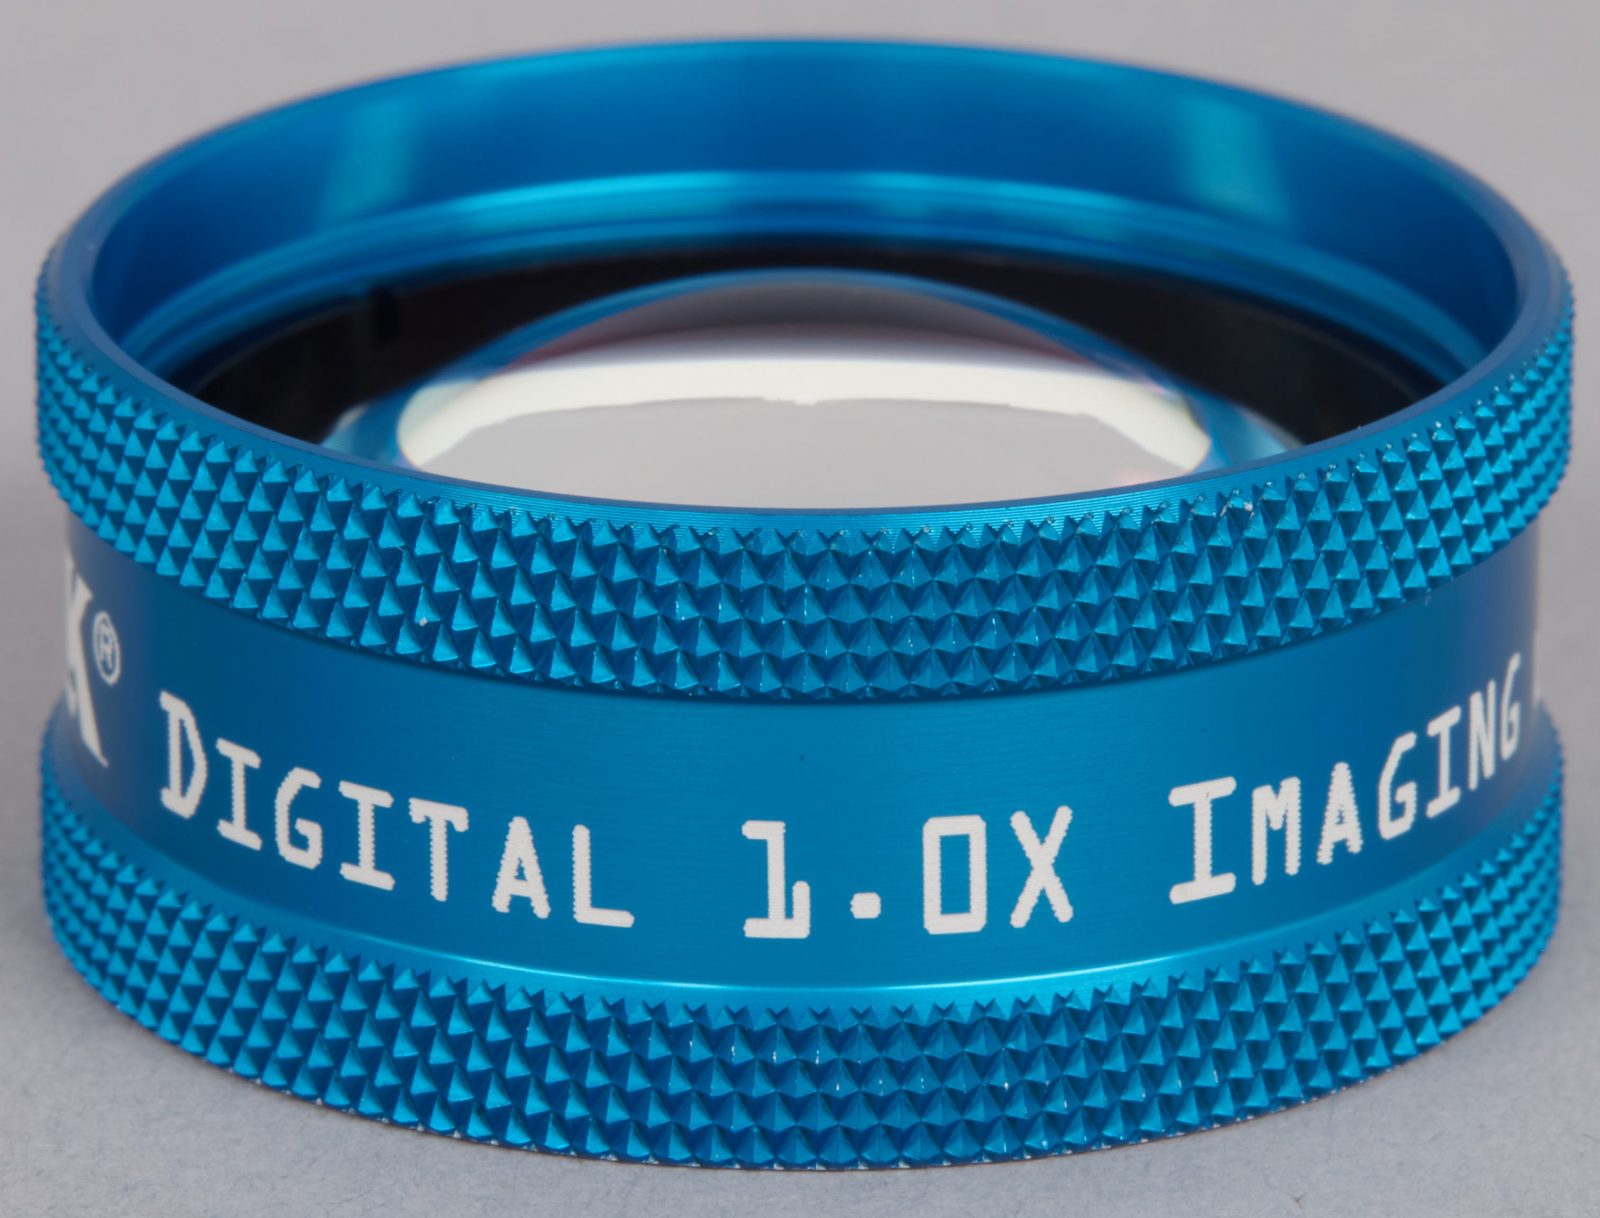 Digital 1.0x Imaging Lens